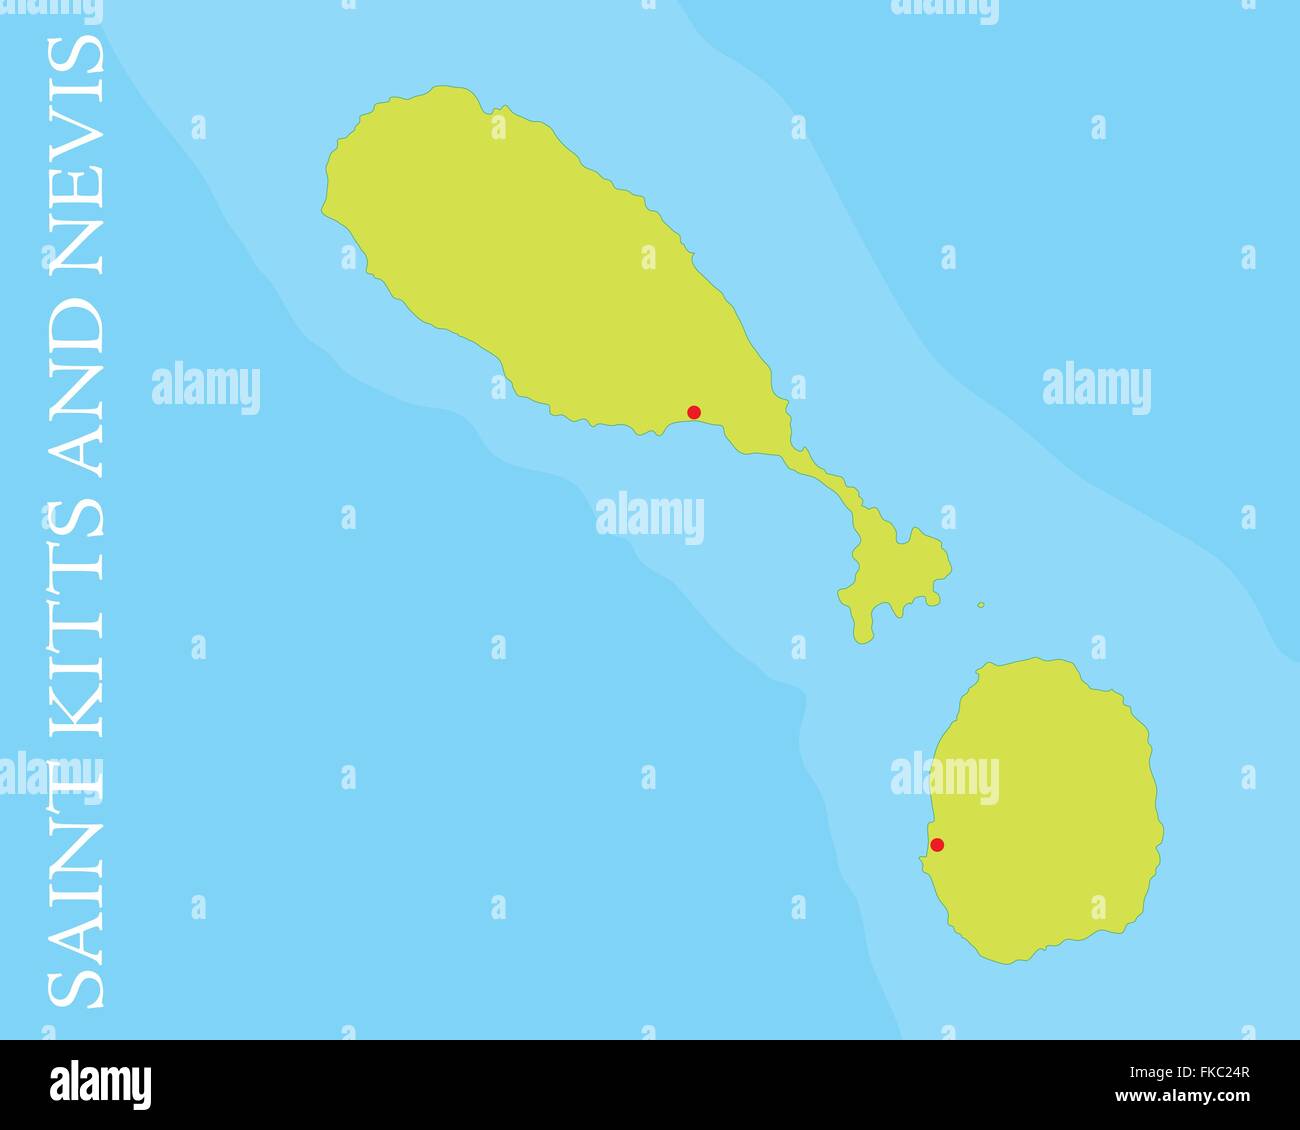 Karte von St. Kitts und Nevis-Inseln, Karibik. Stock Vektor